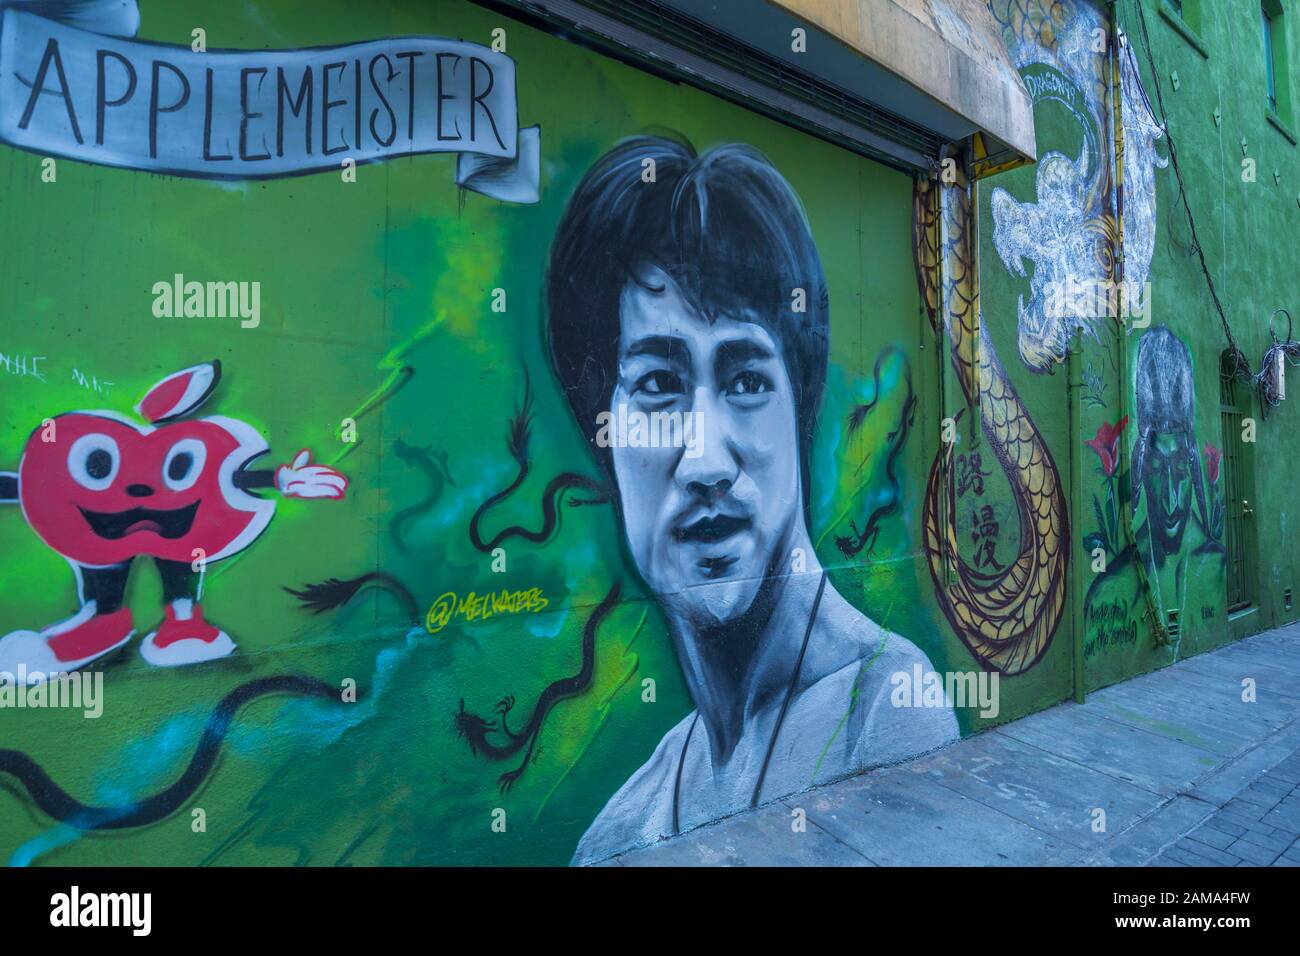 Vue sur la peinture murale de Bruce Lee à Chinatown, San Francisco, Californie, États-Unis d'Amérique, Amérique du Nord Banque D'Images